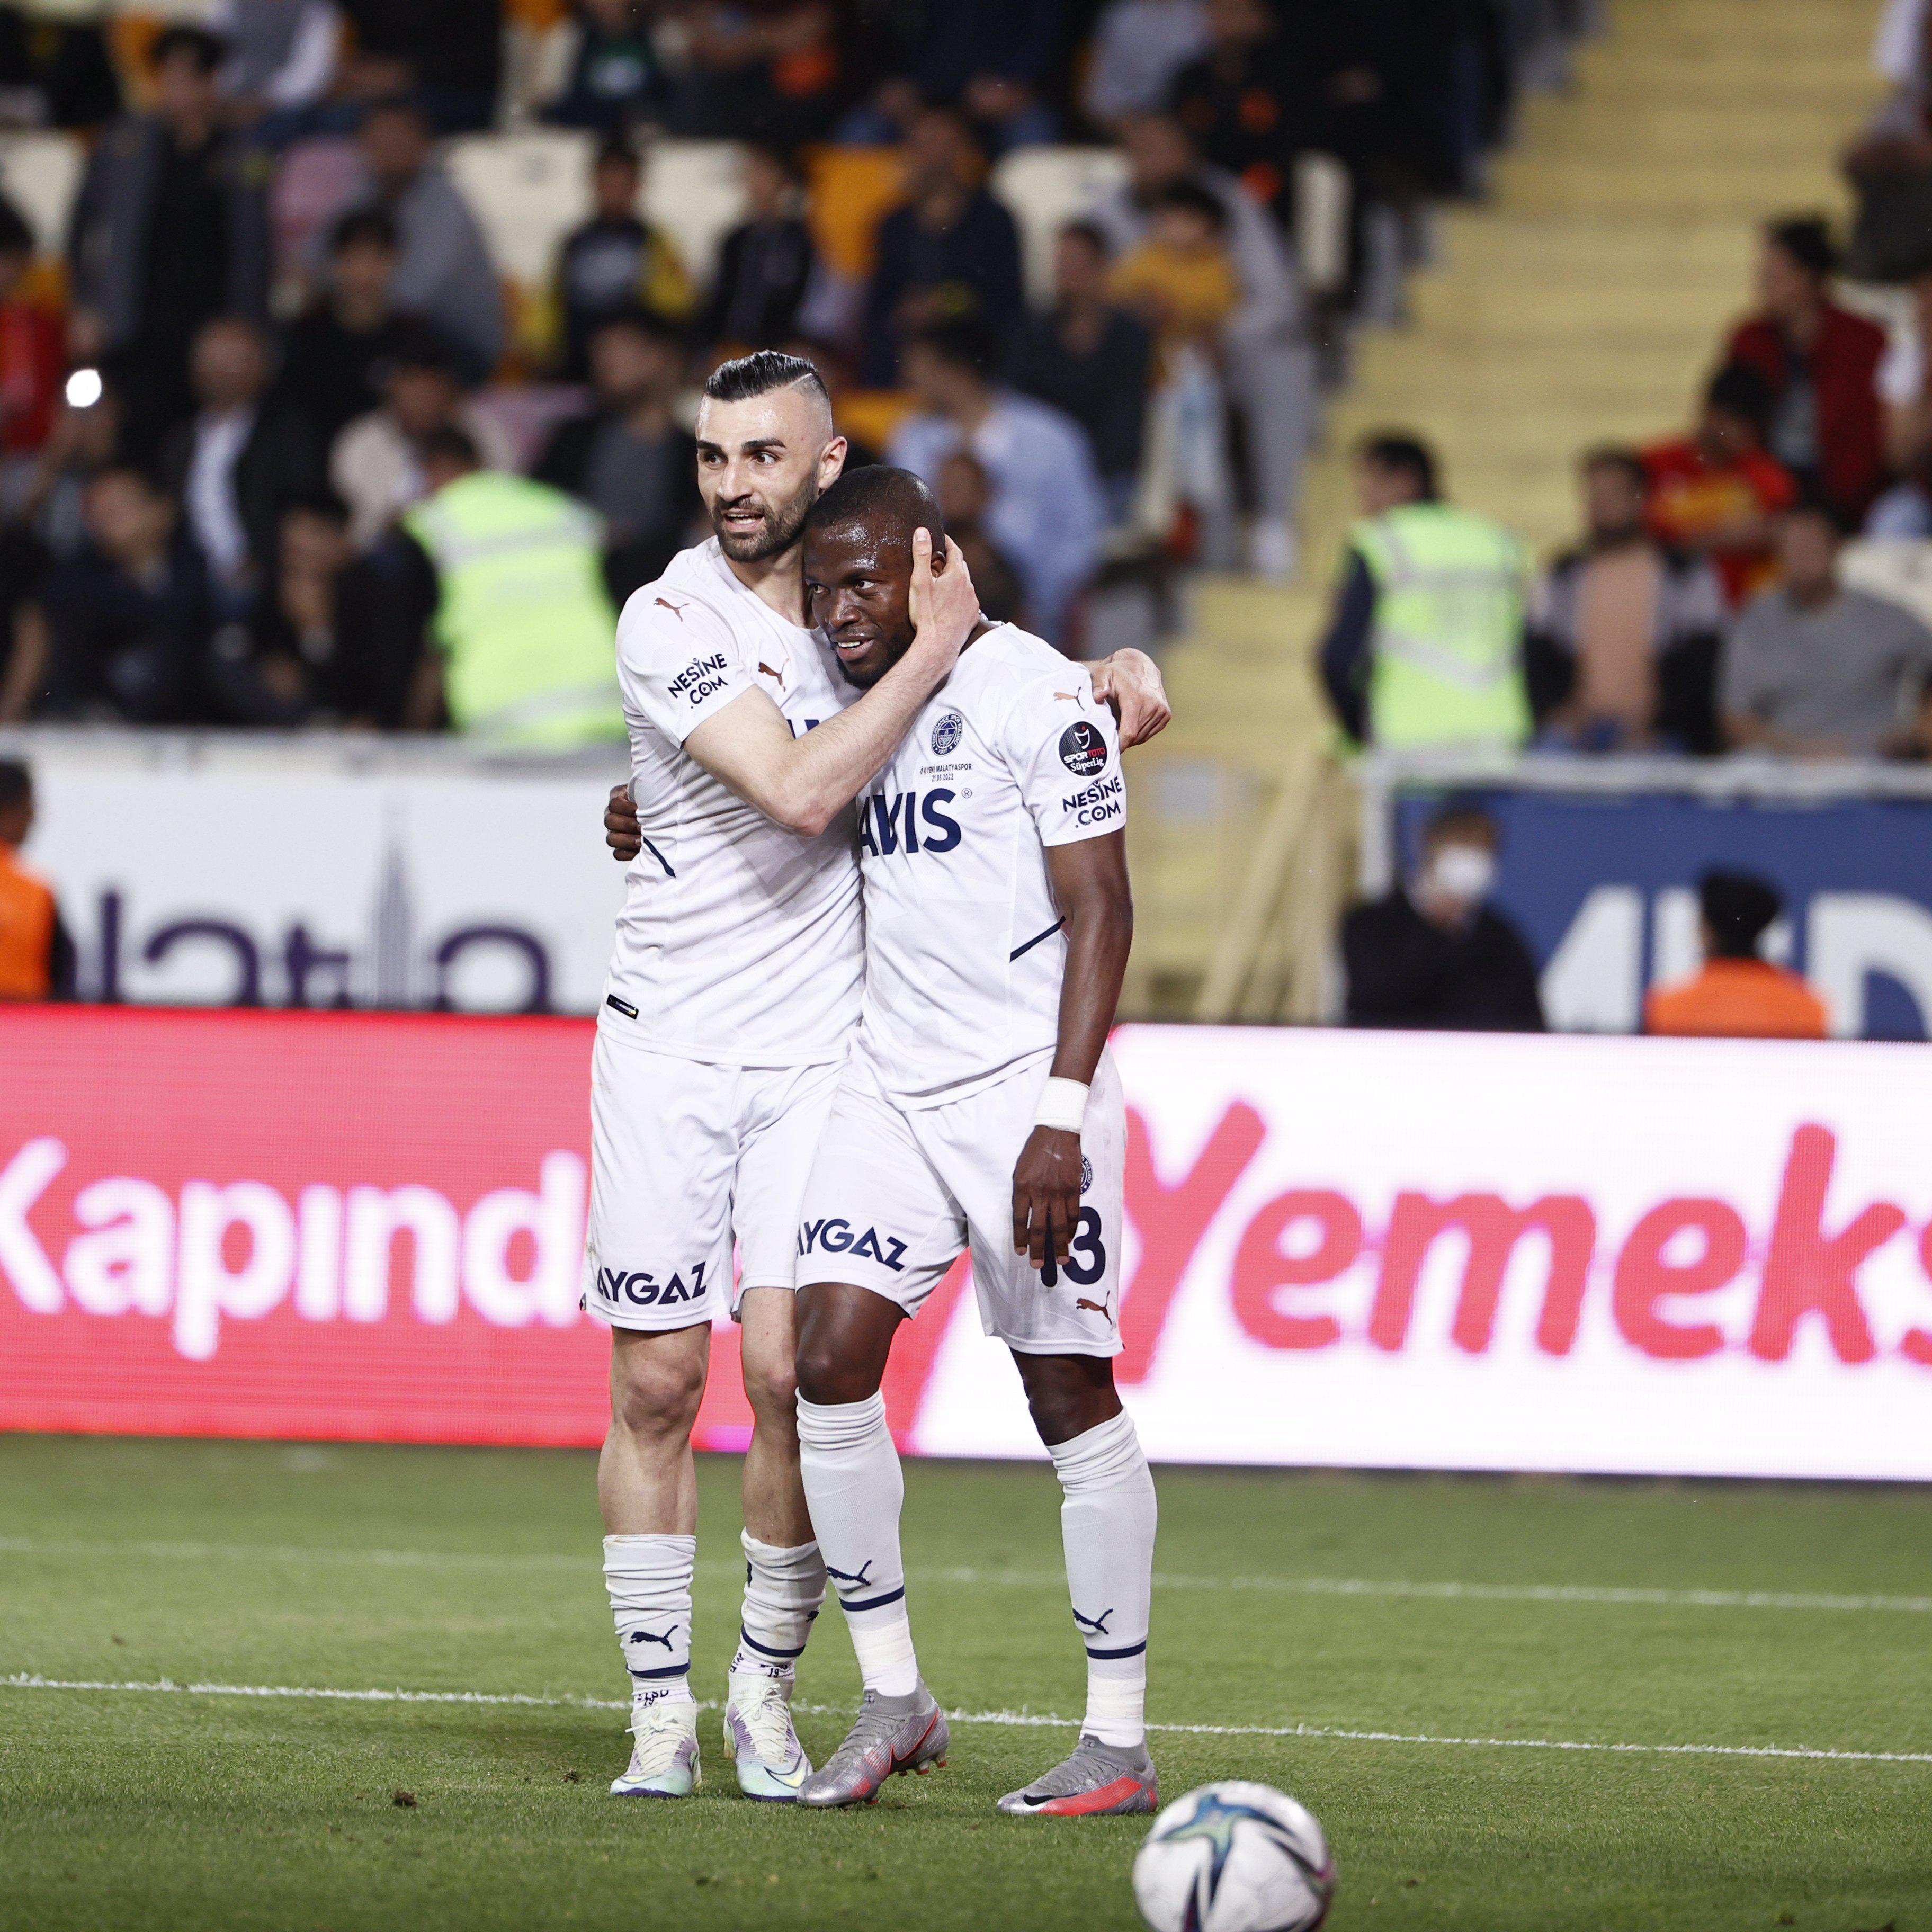 (ÖZET) Yeni Malatyaspor - Fenerbahçe maç sonucu: 0-5